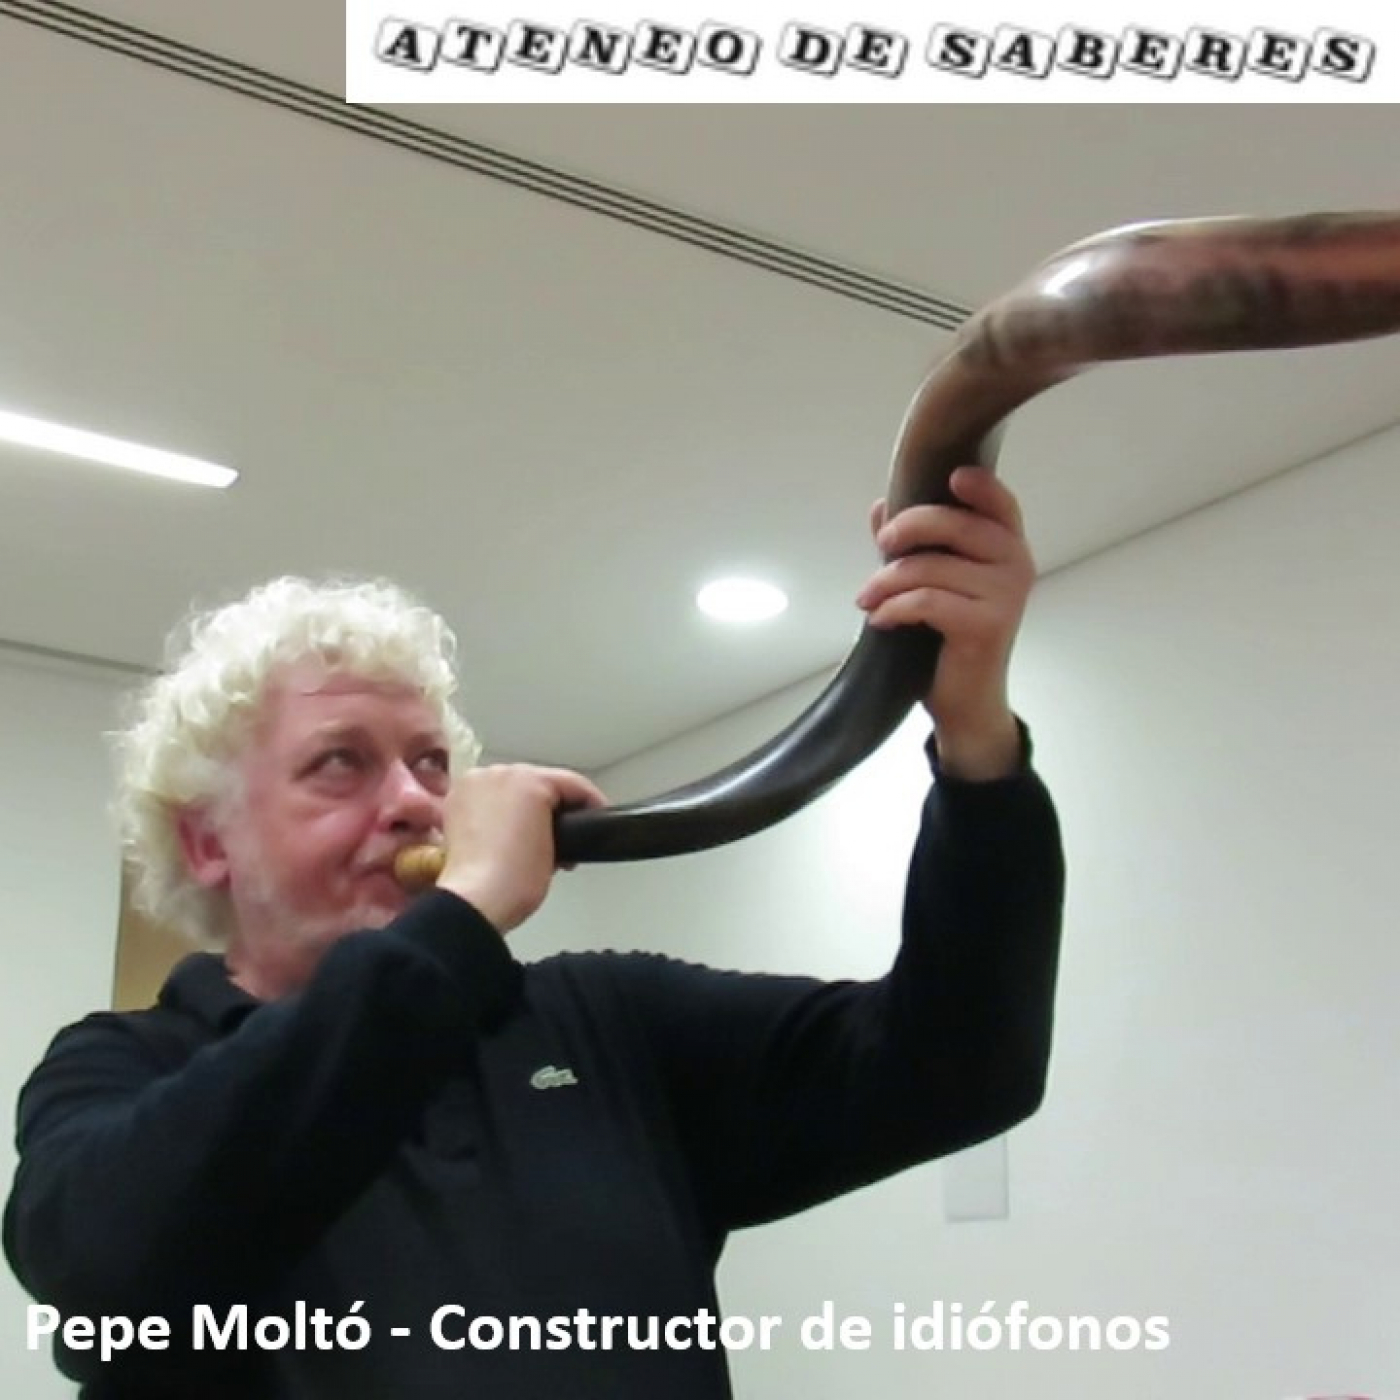 Pepe Moltó – Constructor de idiófonos (videopódcast)